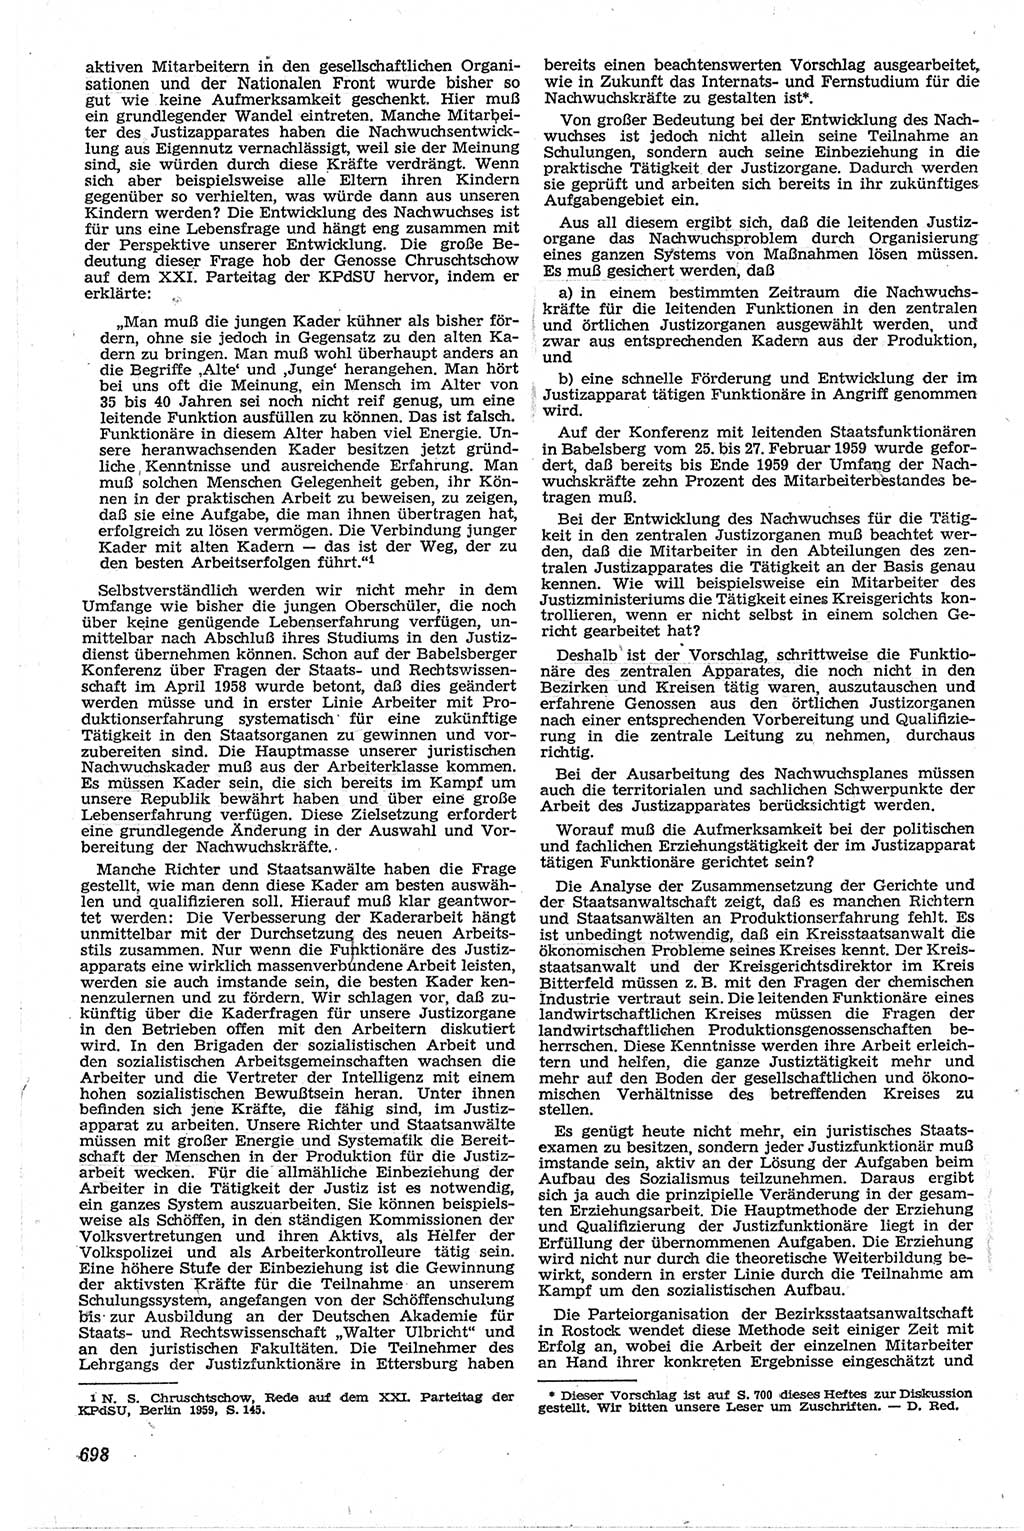 Neue Justiz (NJ), Zeitschrift für Recht und Rechtswissenschaft [Deutsche Demokratische Republik (DDR)], 13. Jahrgang 1959, Seite 698 (NJ DDR 1959, S. 698)